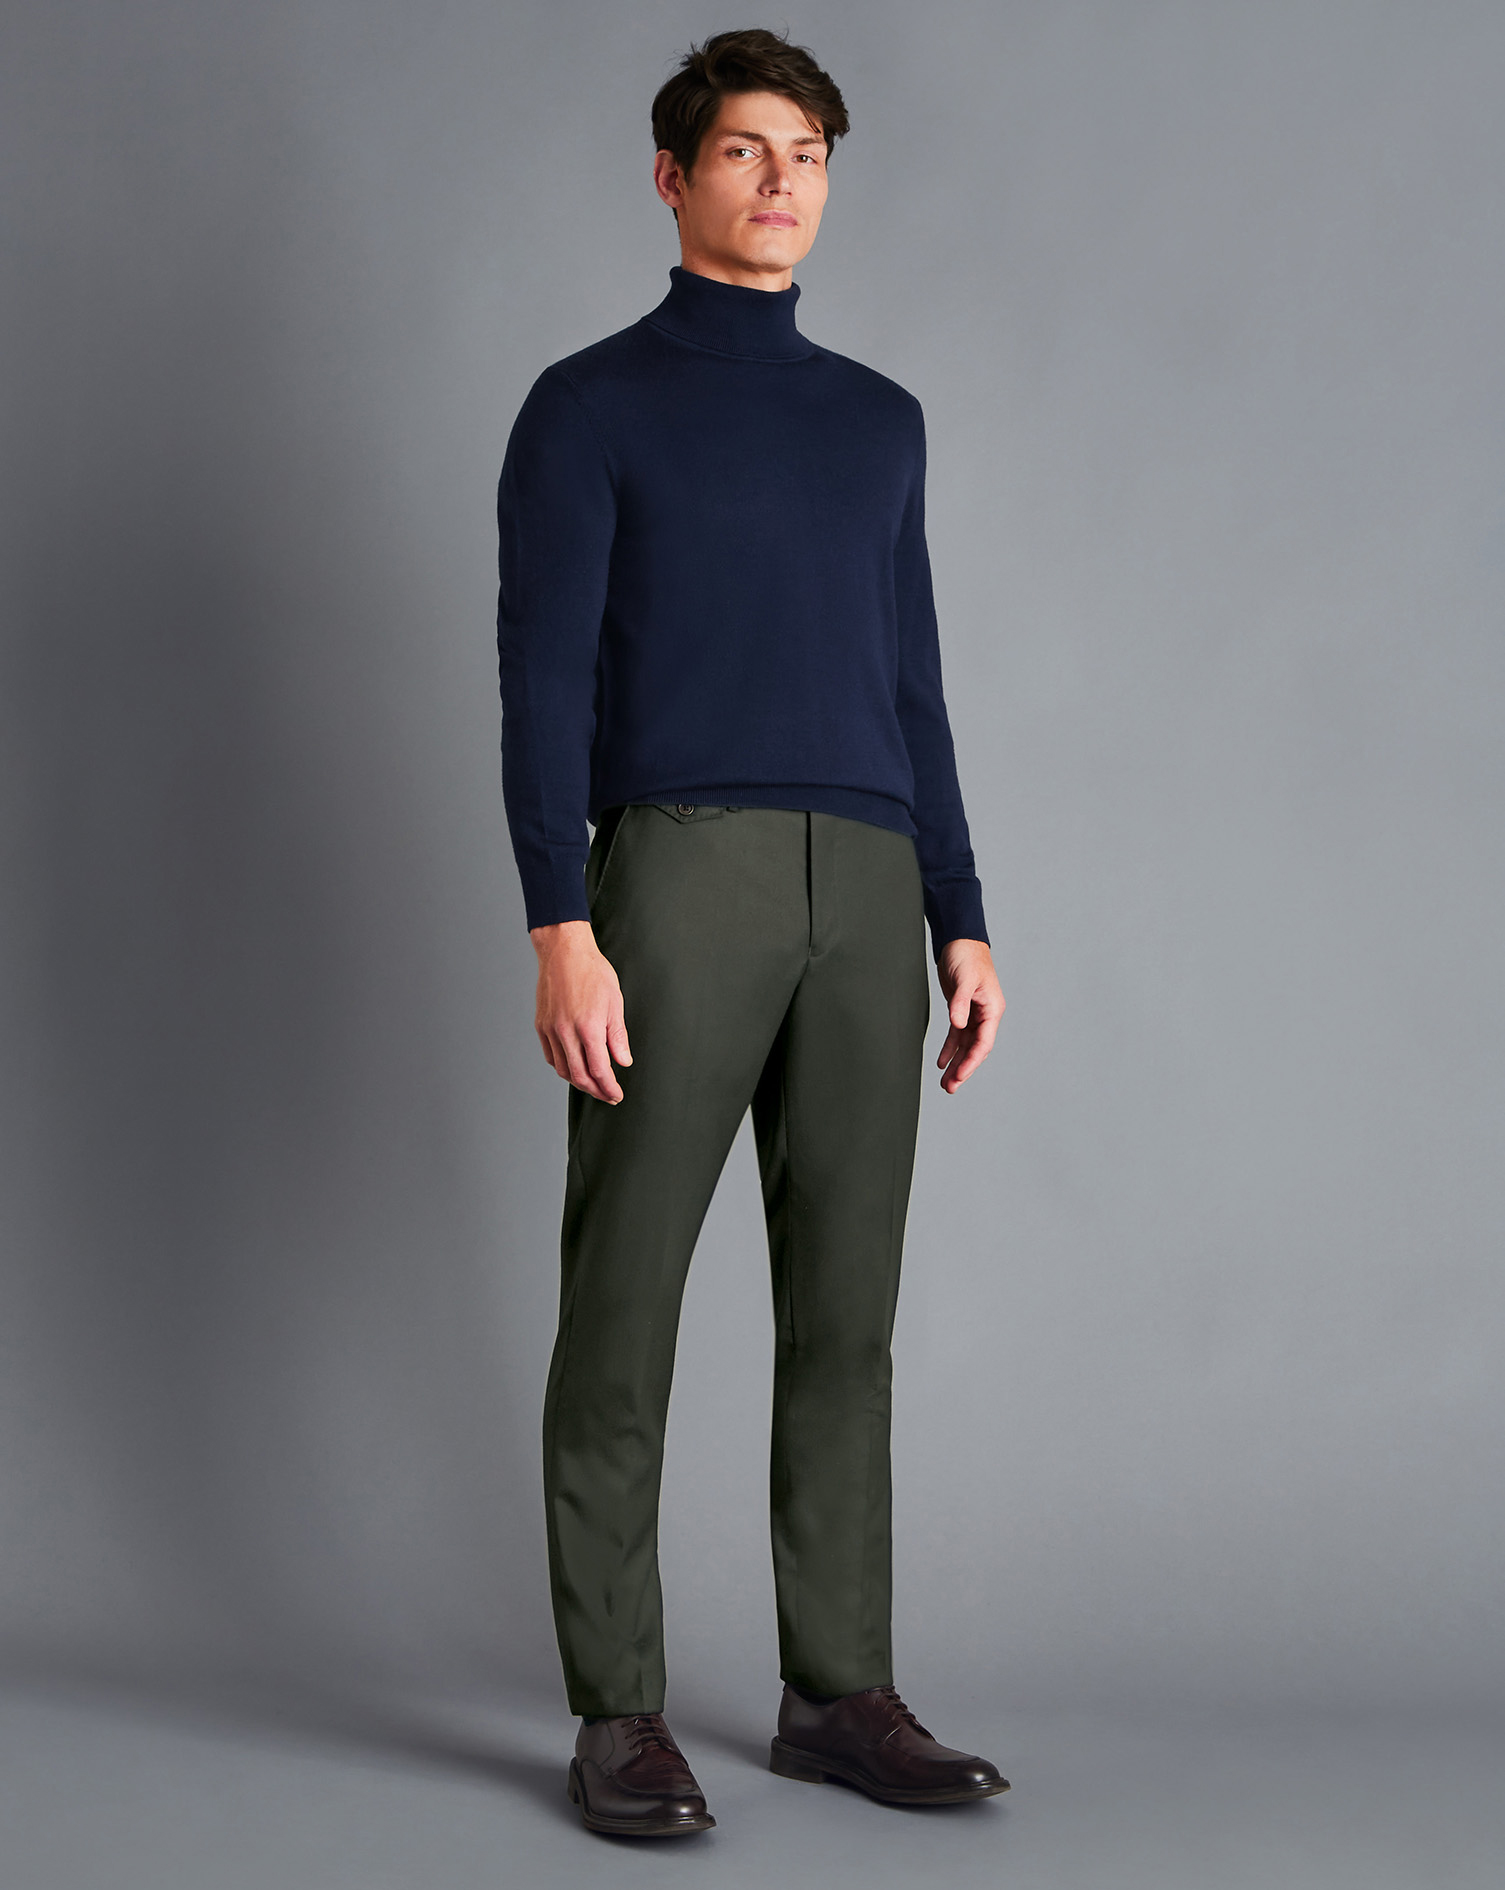 Men's Charles Tyrwhitt Italian Flannel Trousers - Olive Green Size W34 L30 Wool
